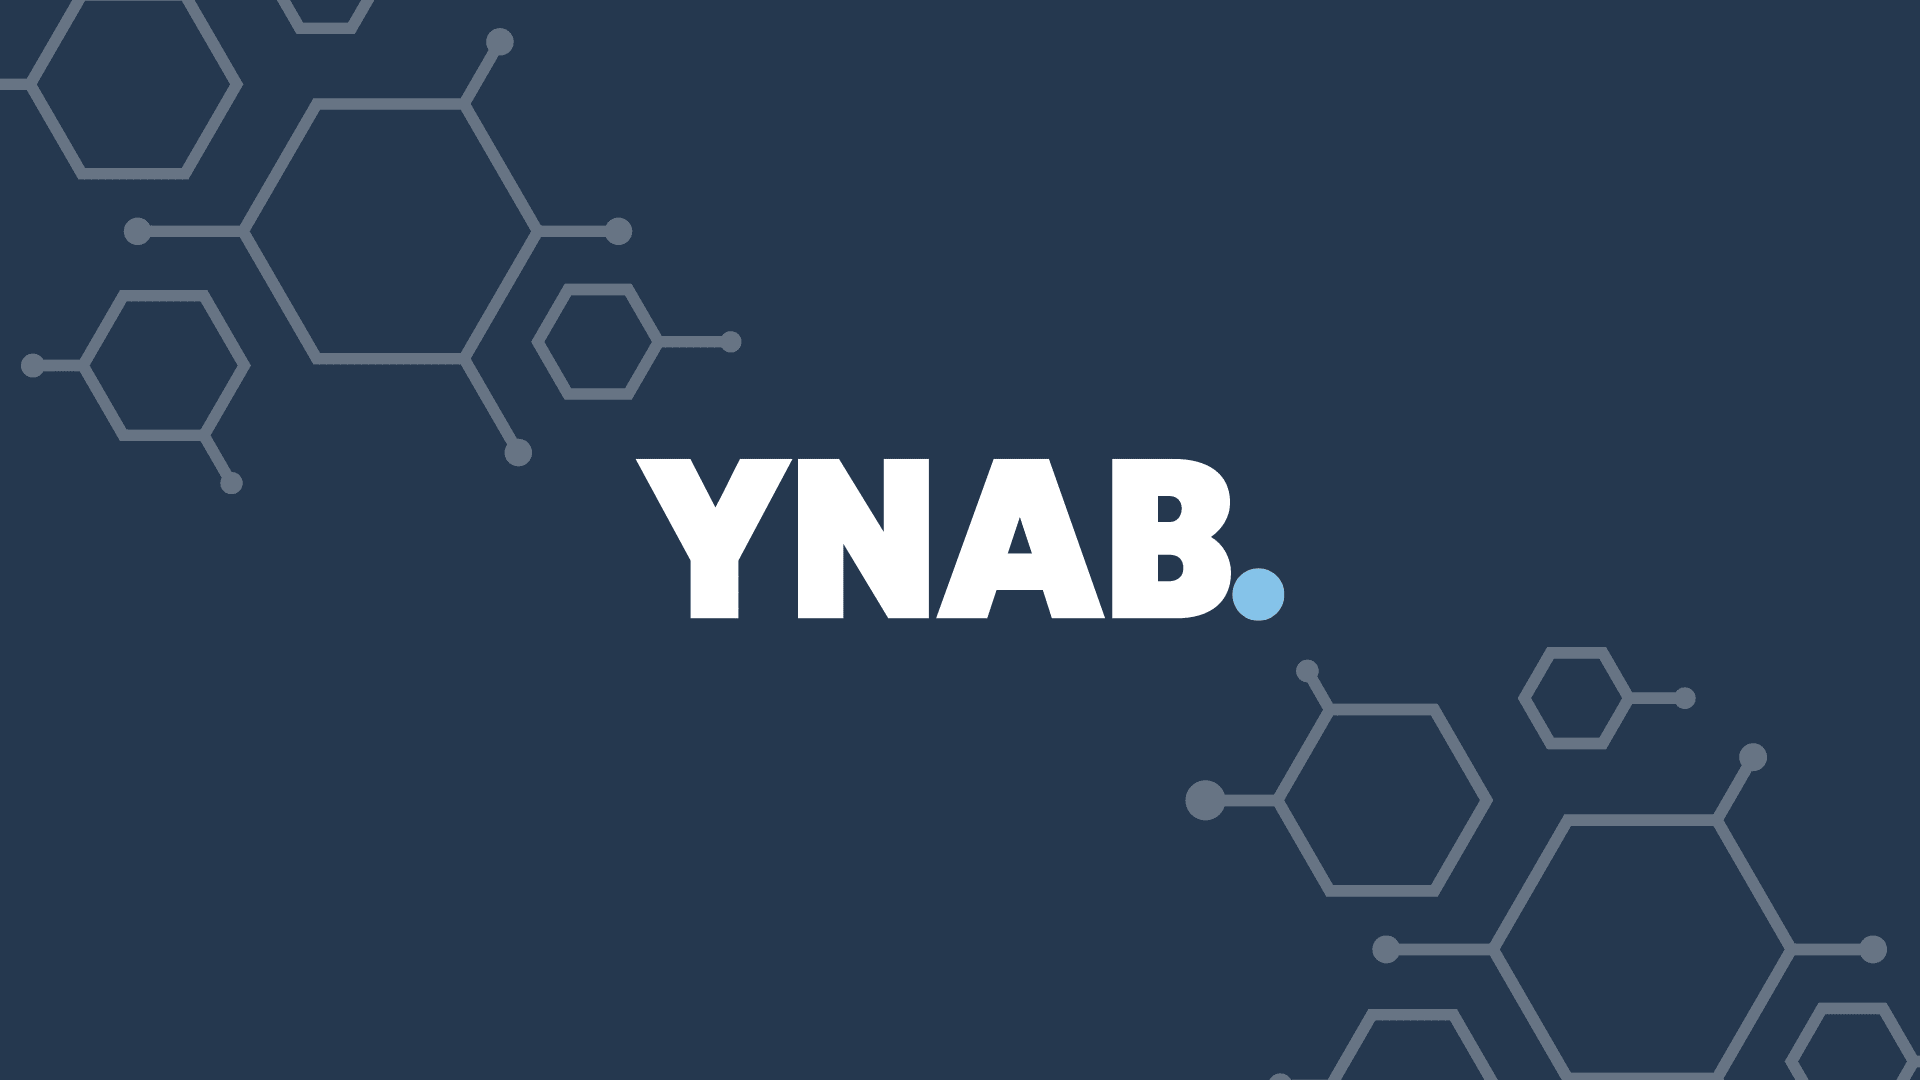 YNAB Logo